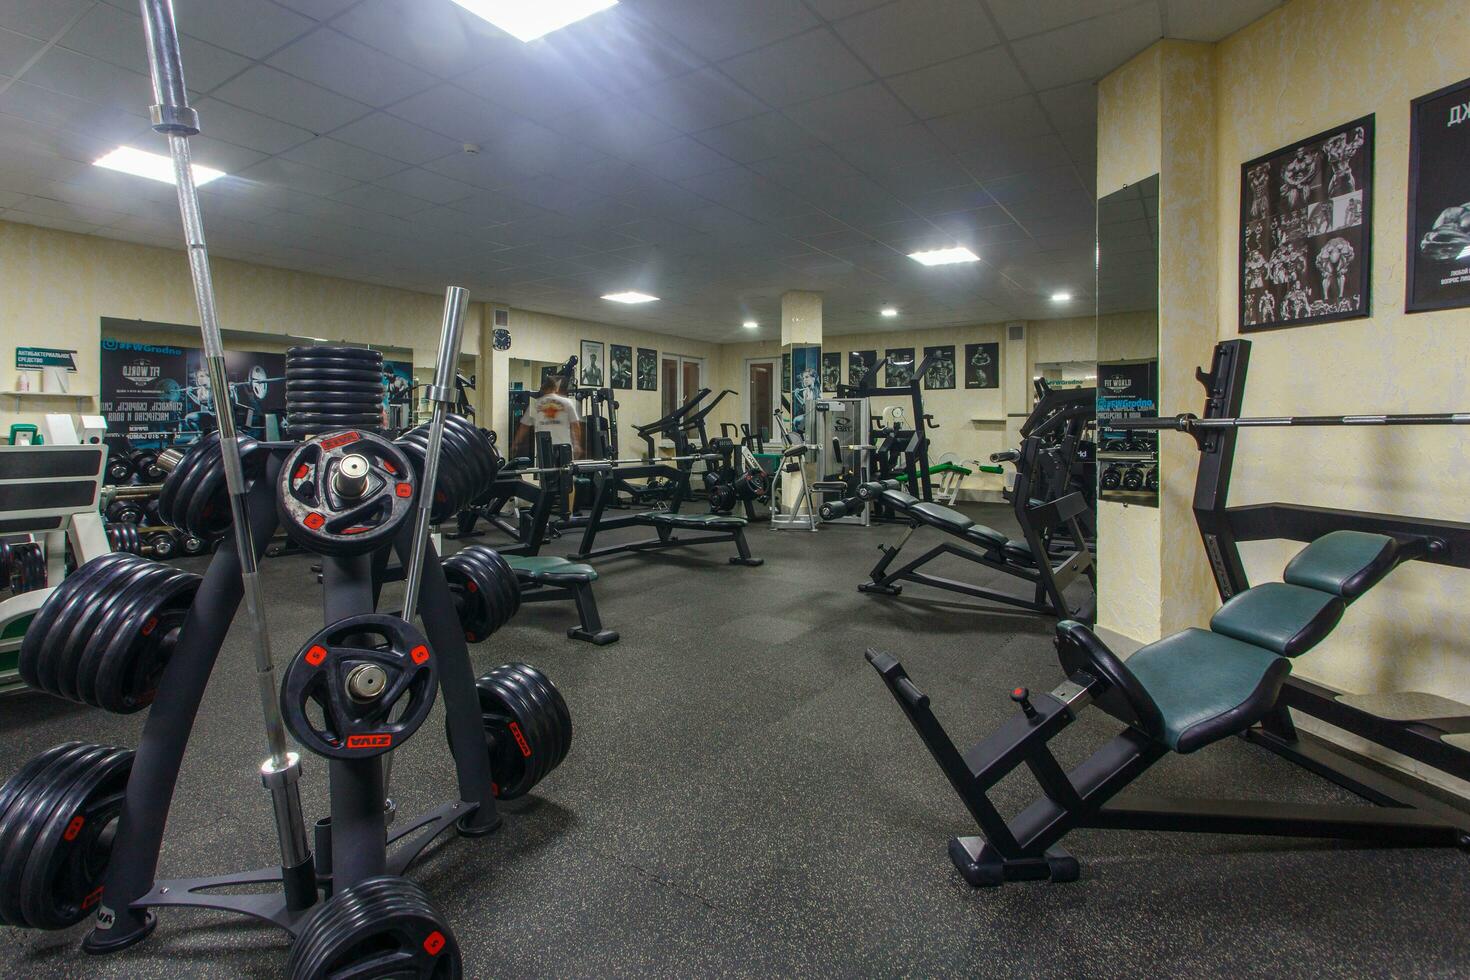 grodno, Vitryssland - januari 04, 2018 interiör av de kondition klubb fitworld med kondition Utrustning foto